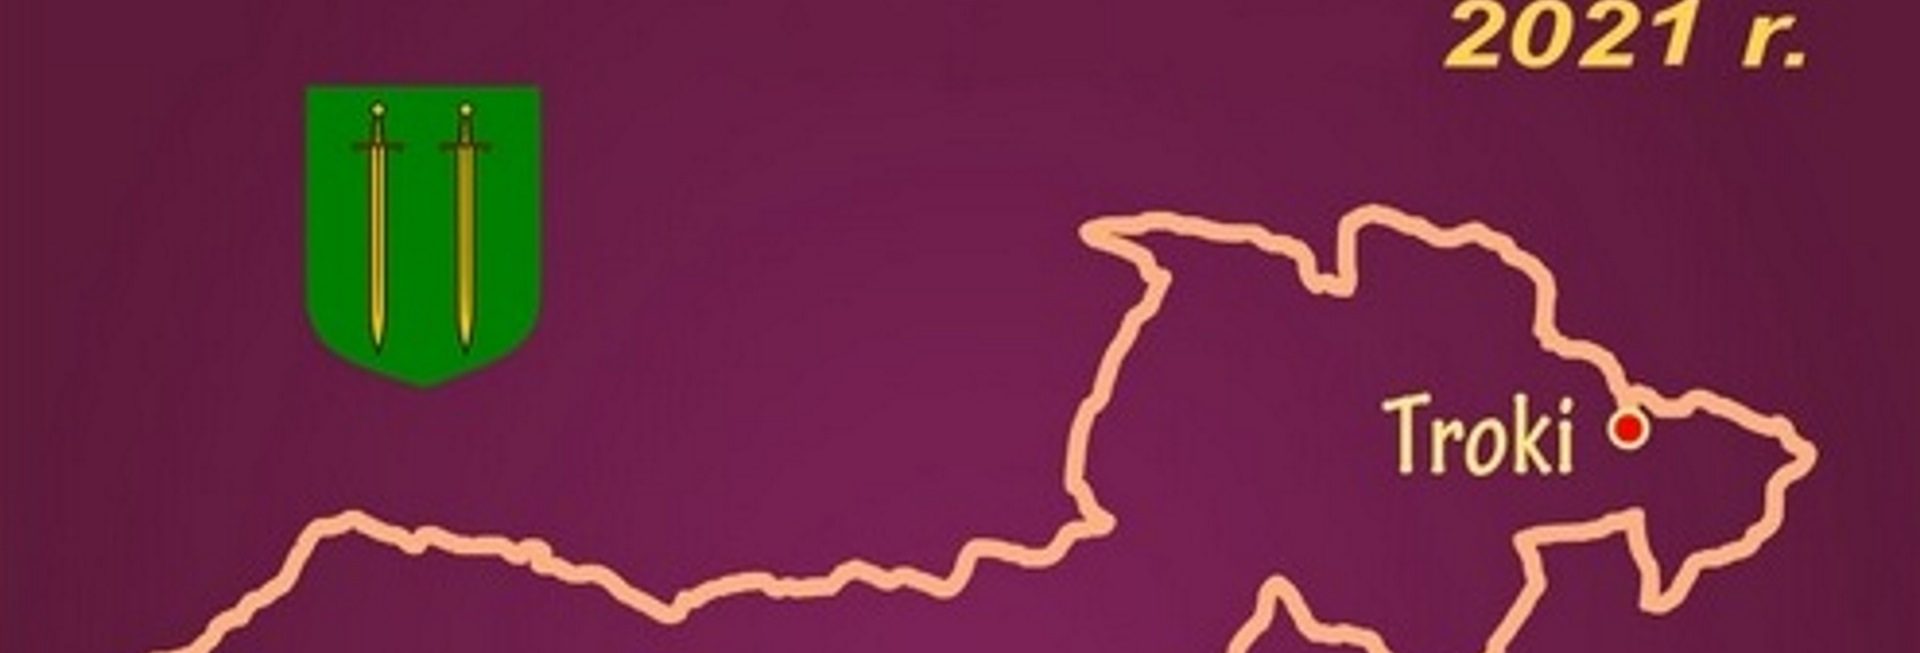 Plakat zapraszający do udziału w zawodach Ultra Maraton Kolarski Grunwald-Troki-Grunwald 1410 km - 2021. Plakat graficzny posiadający fioletowe tło na którym narysowany jest kontur mapy trasy zawodów i napisy o imprezie.    